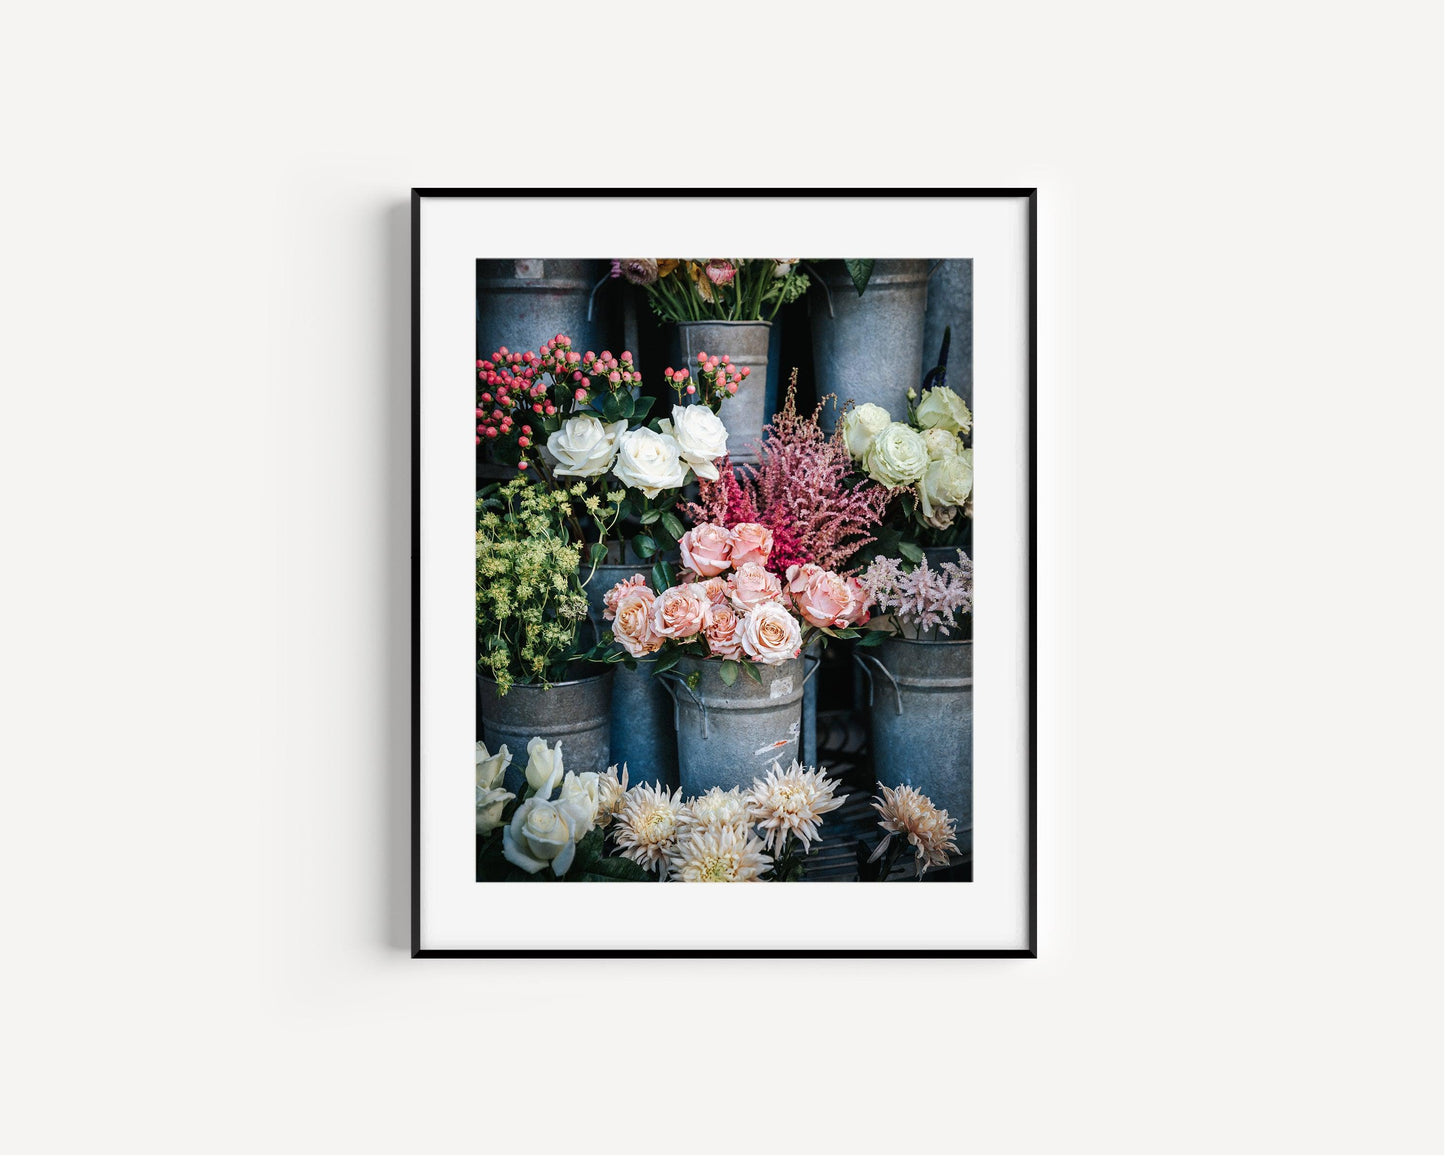 European Flower Market | Floral Photography Print - Departures Print Shop